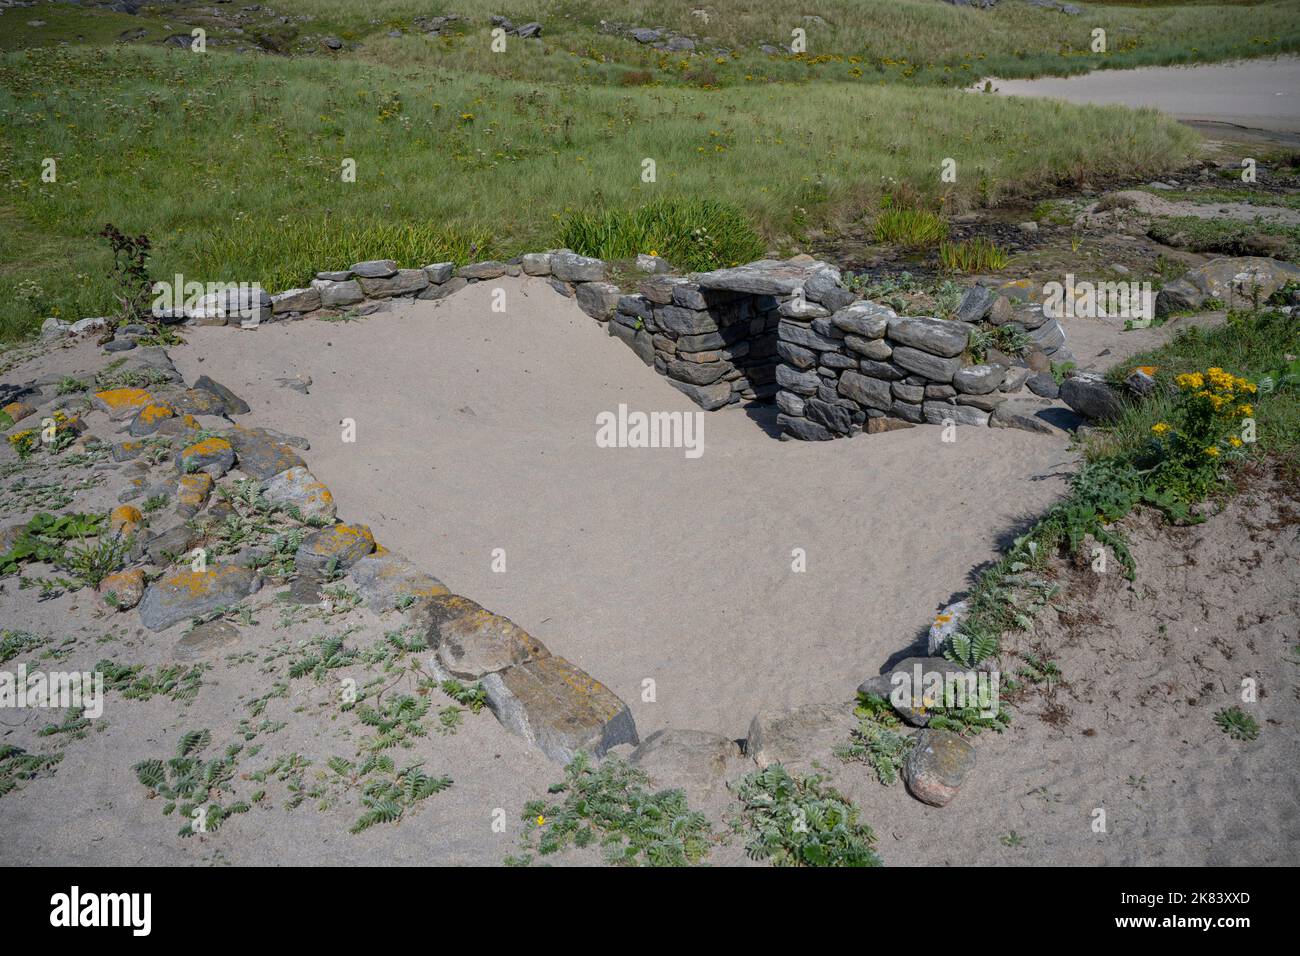 Ruines du village déserté sur l'île de Mingulay, Bishop's Isles, Outer Hebrides, Écosse, Royaume-Uni Banque D'Images